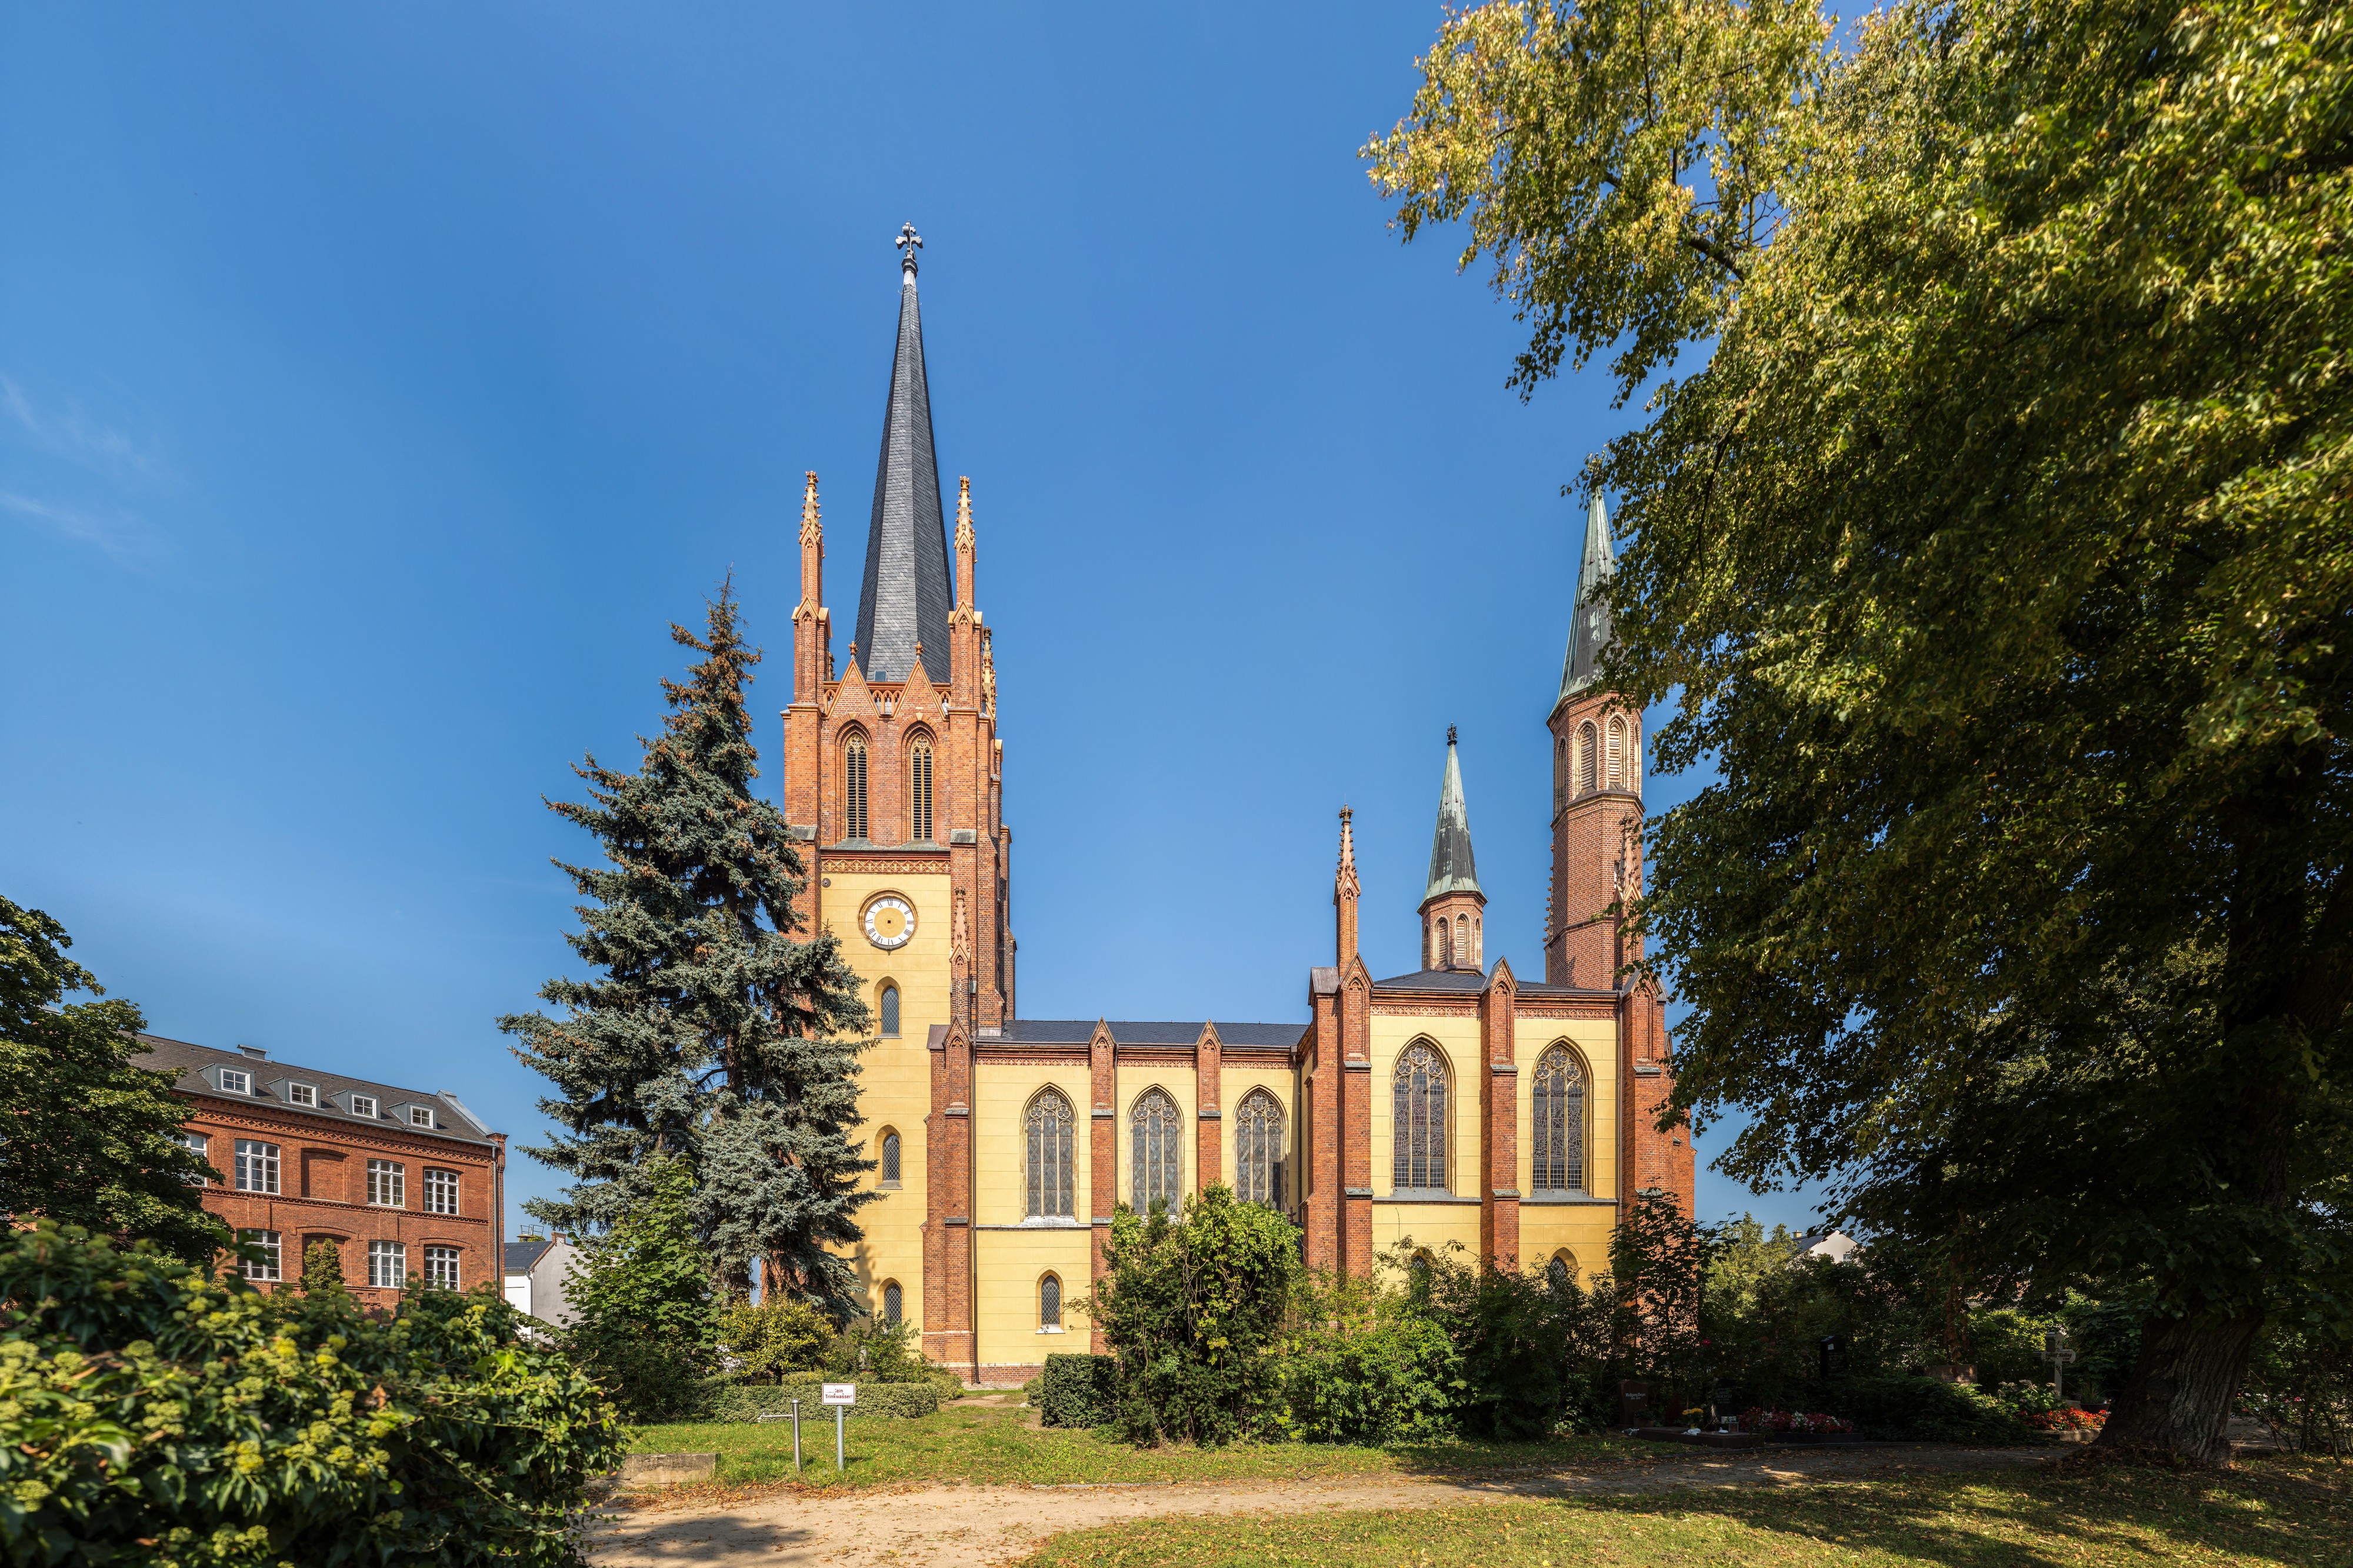 Heilig-Geist-Kirche, Werder an der Havel, 150912, ako